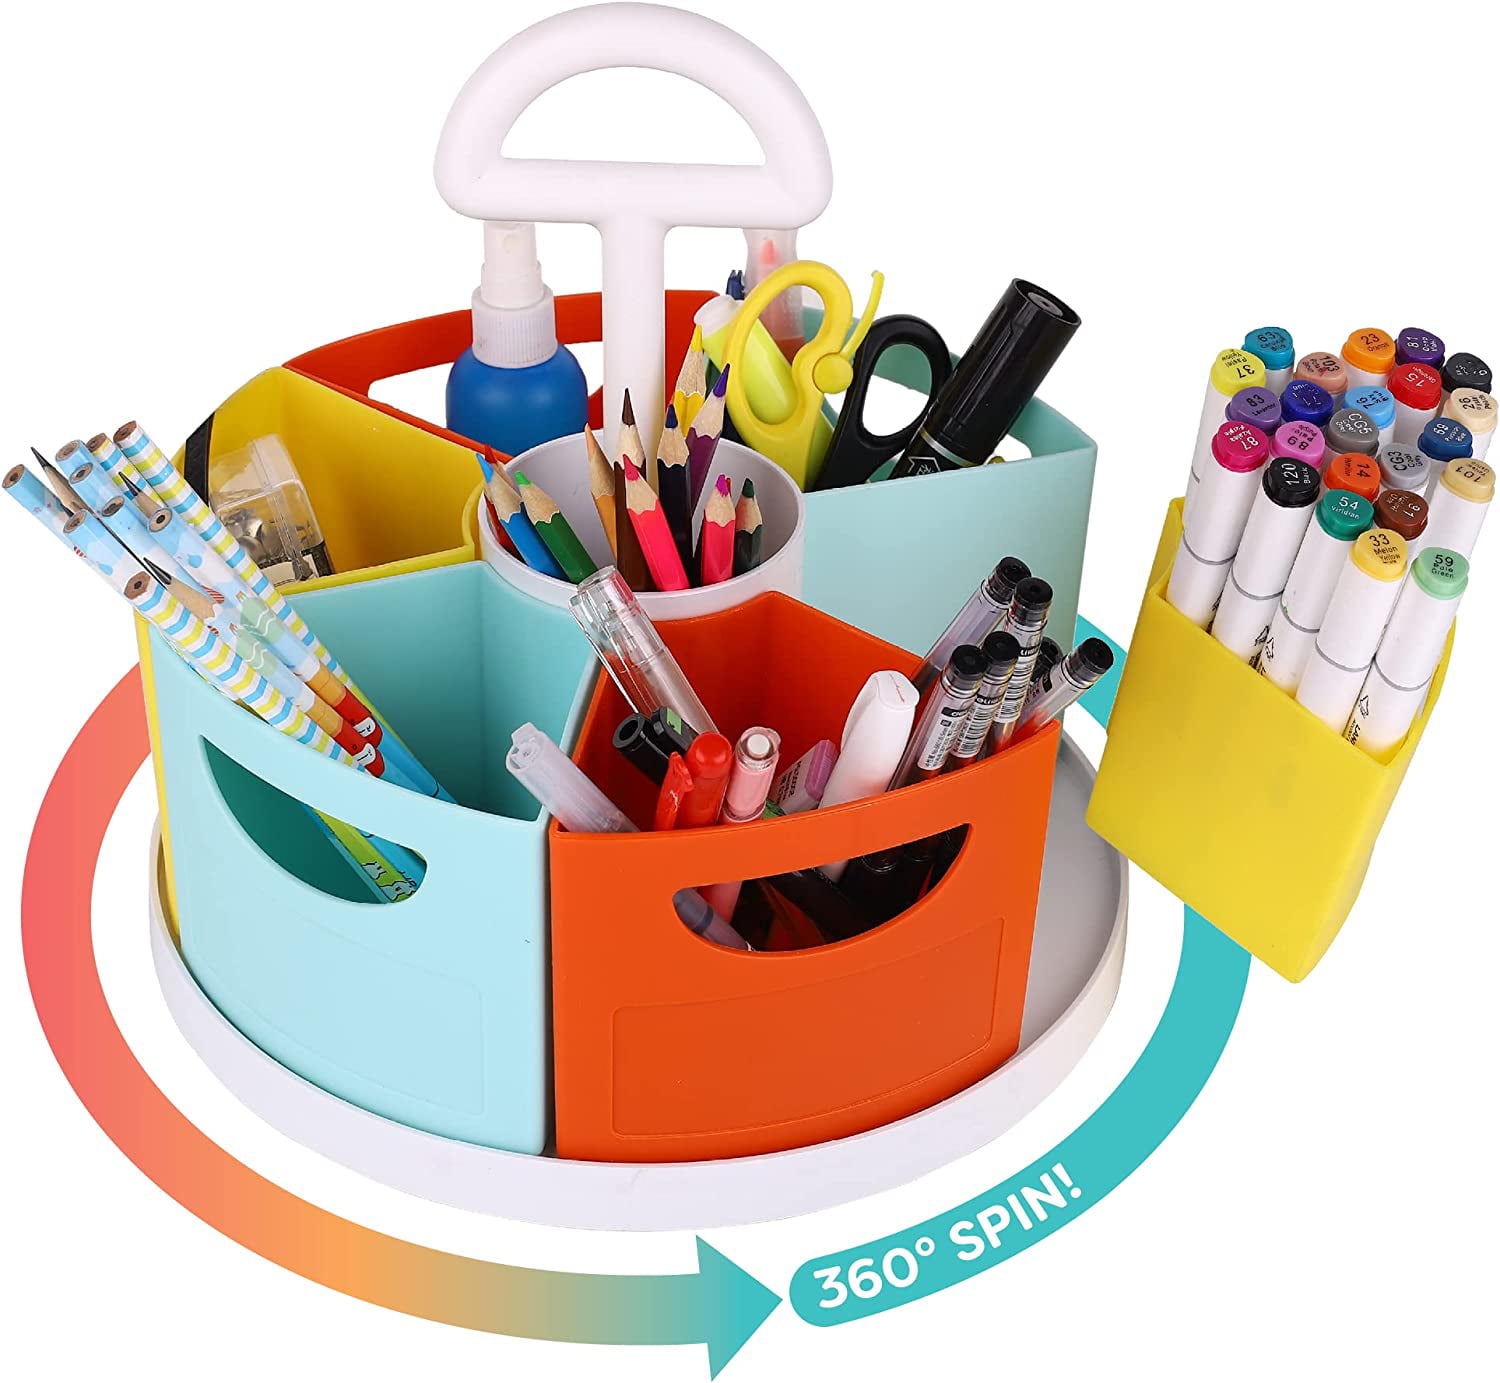 ALBEN Lazy Susan Kids Desk Organizer - Rotates 360 Degrees for Easy ...